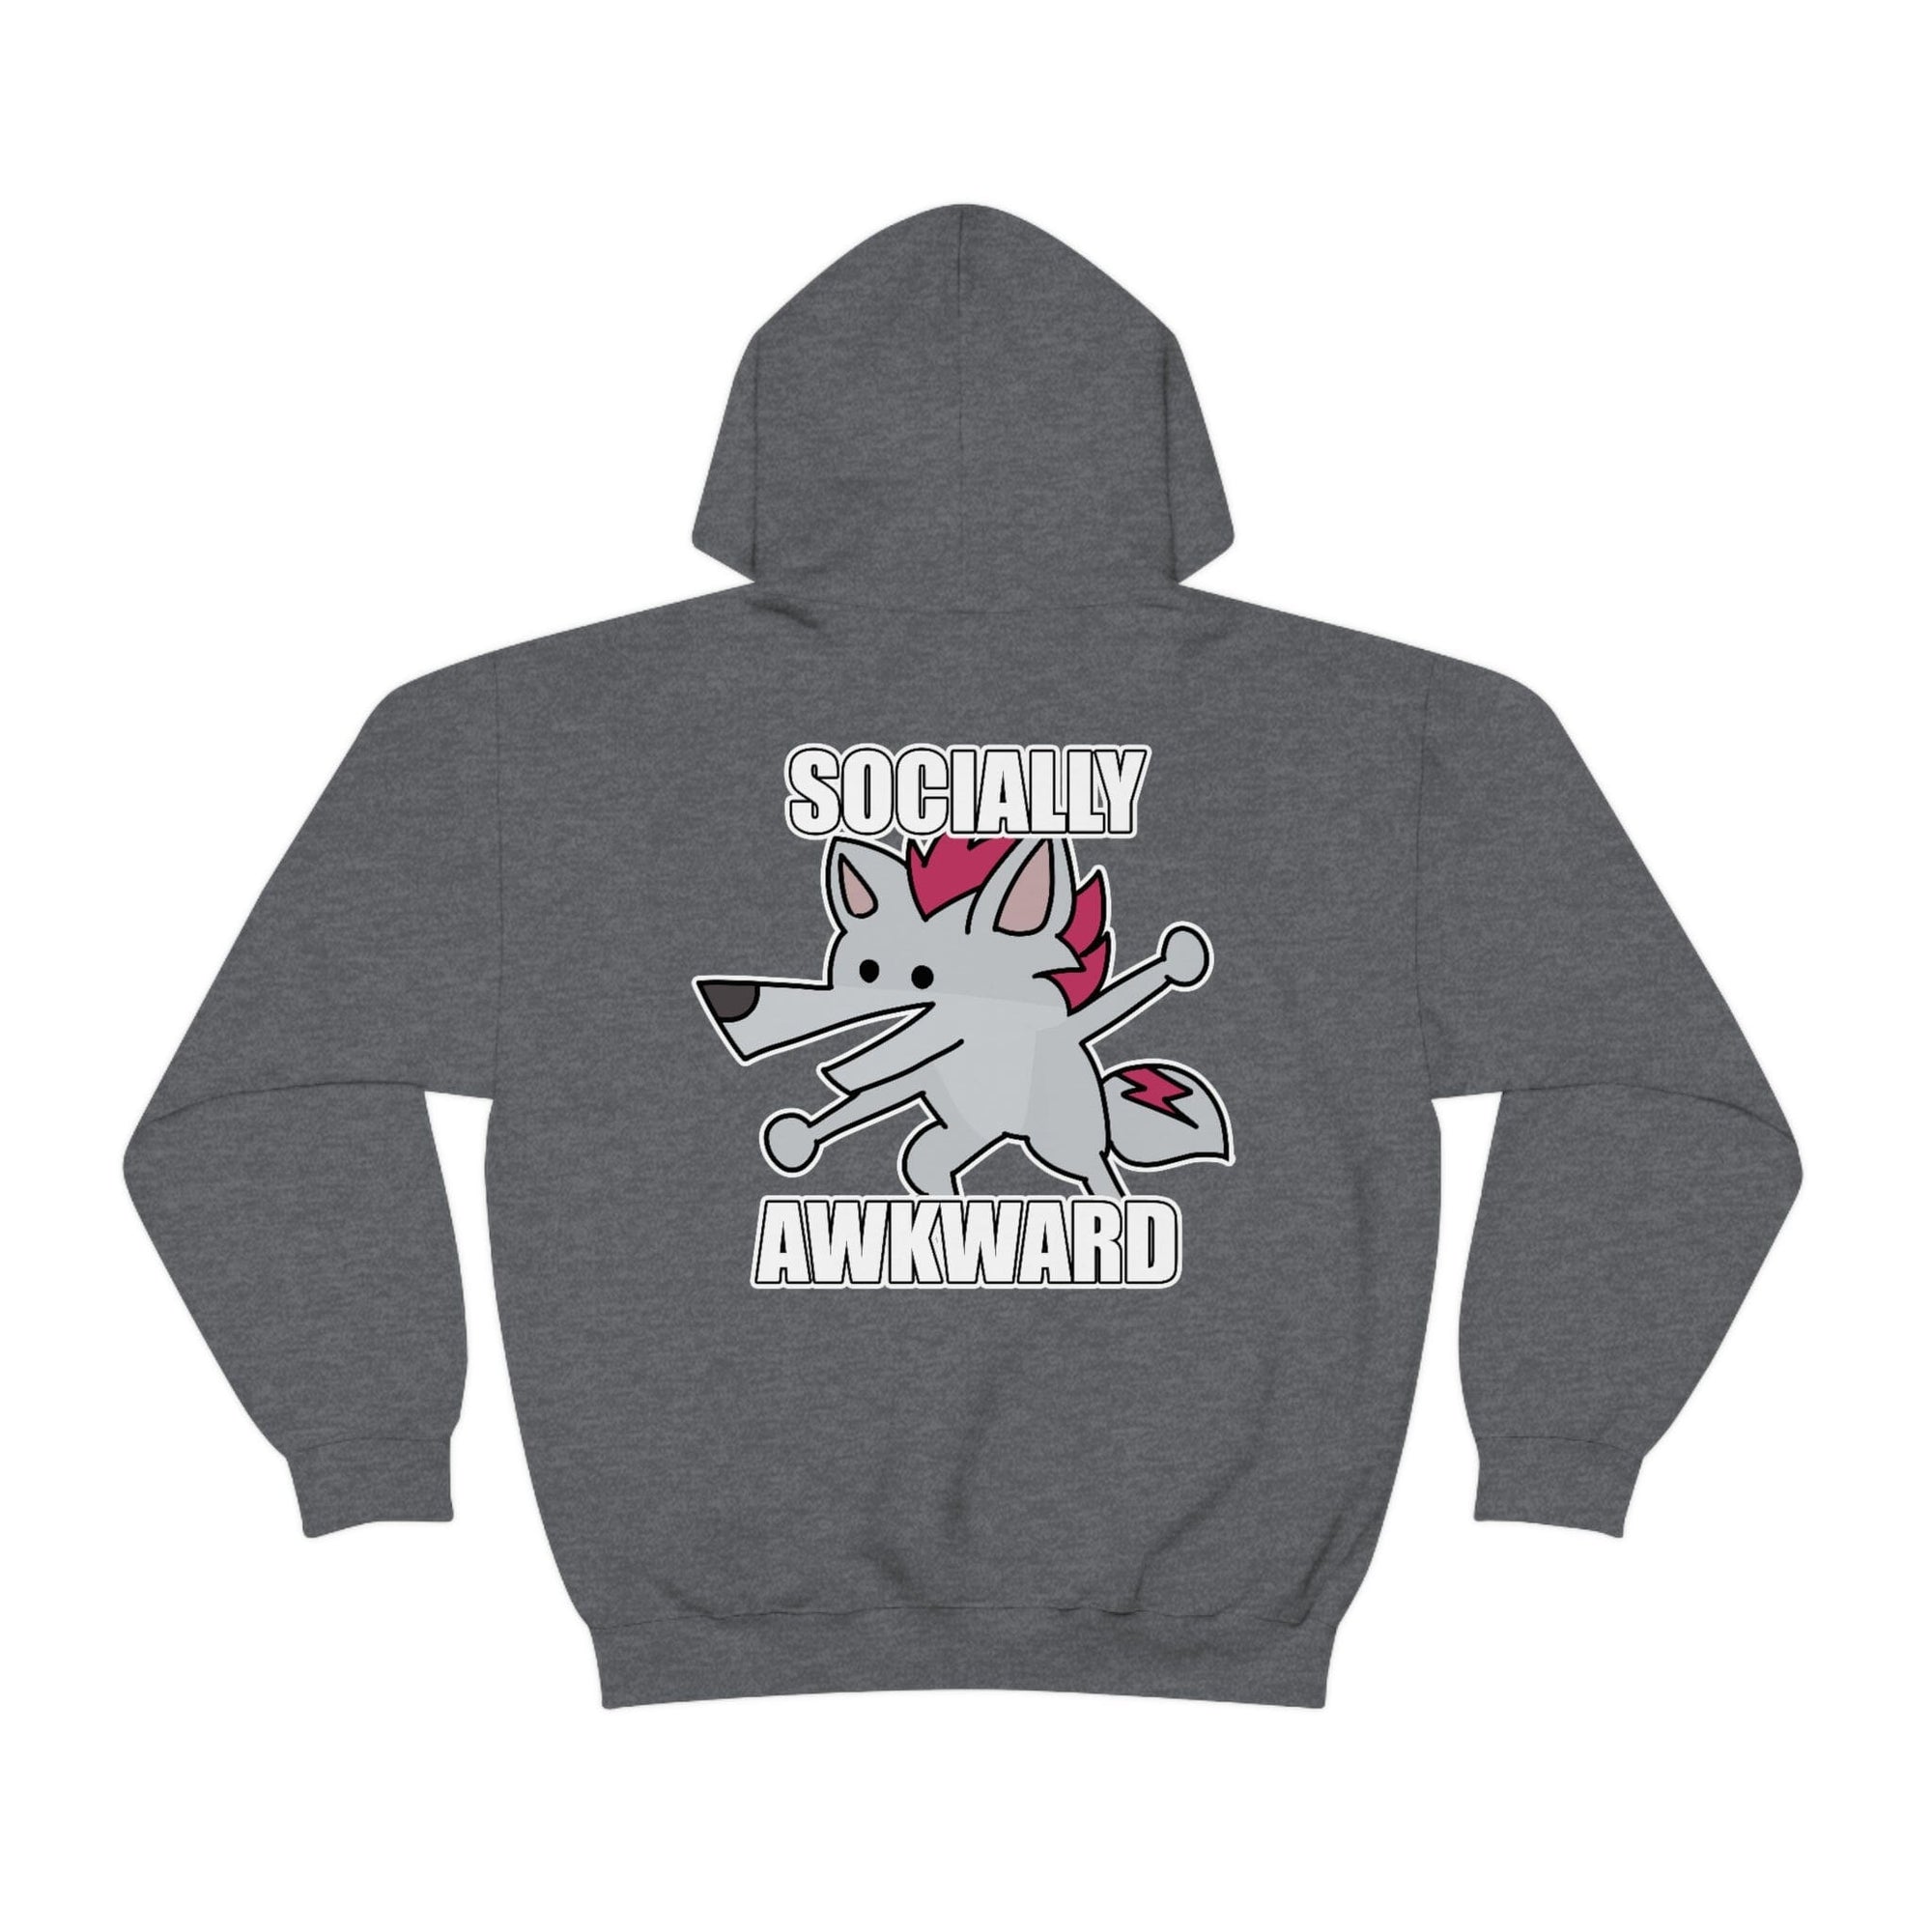 Socially Awkward Shreddyfox - Hoodie Hoodie Shreddyfox Dark Heather S 